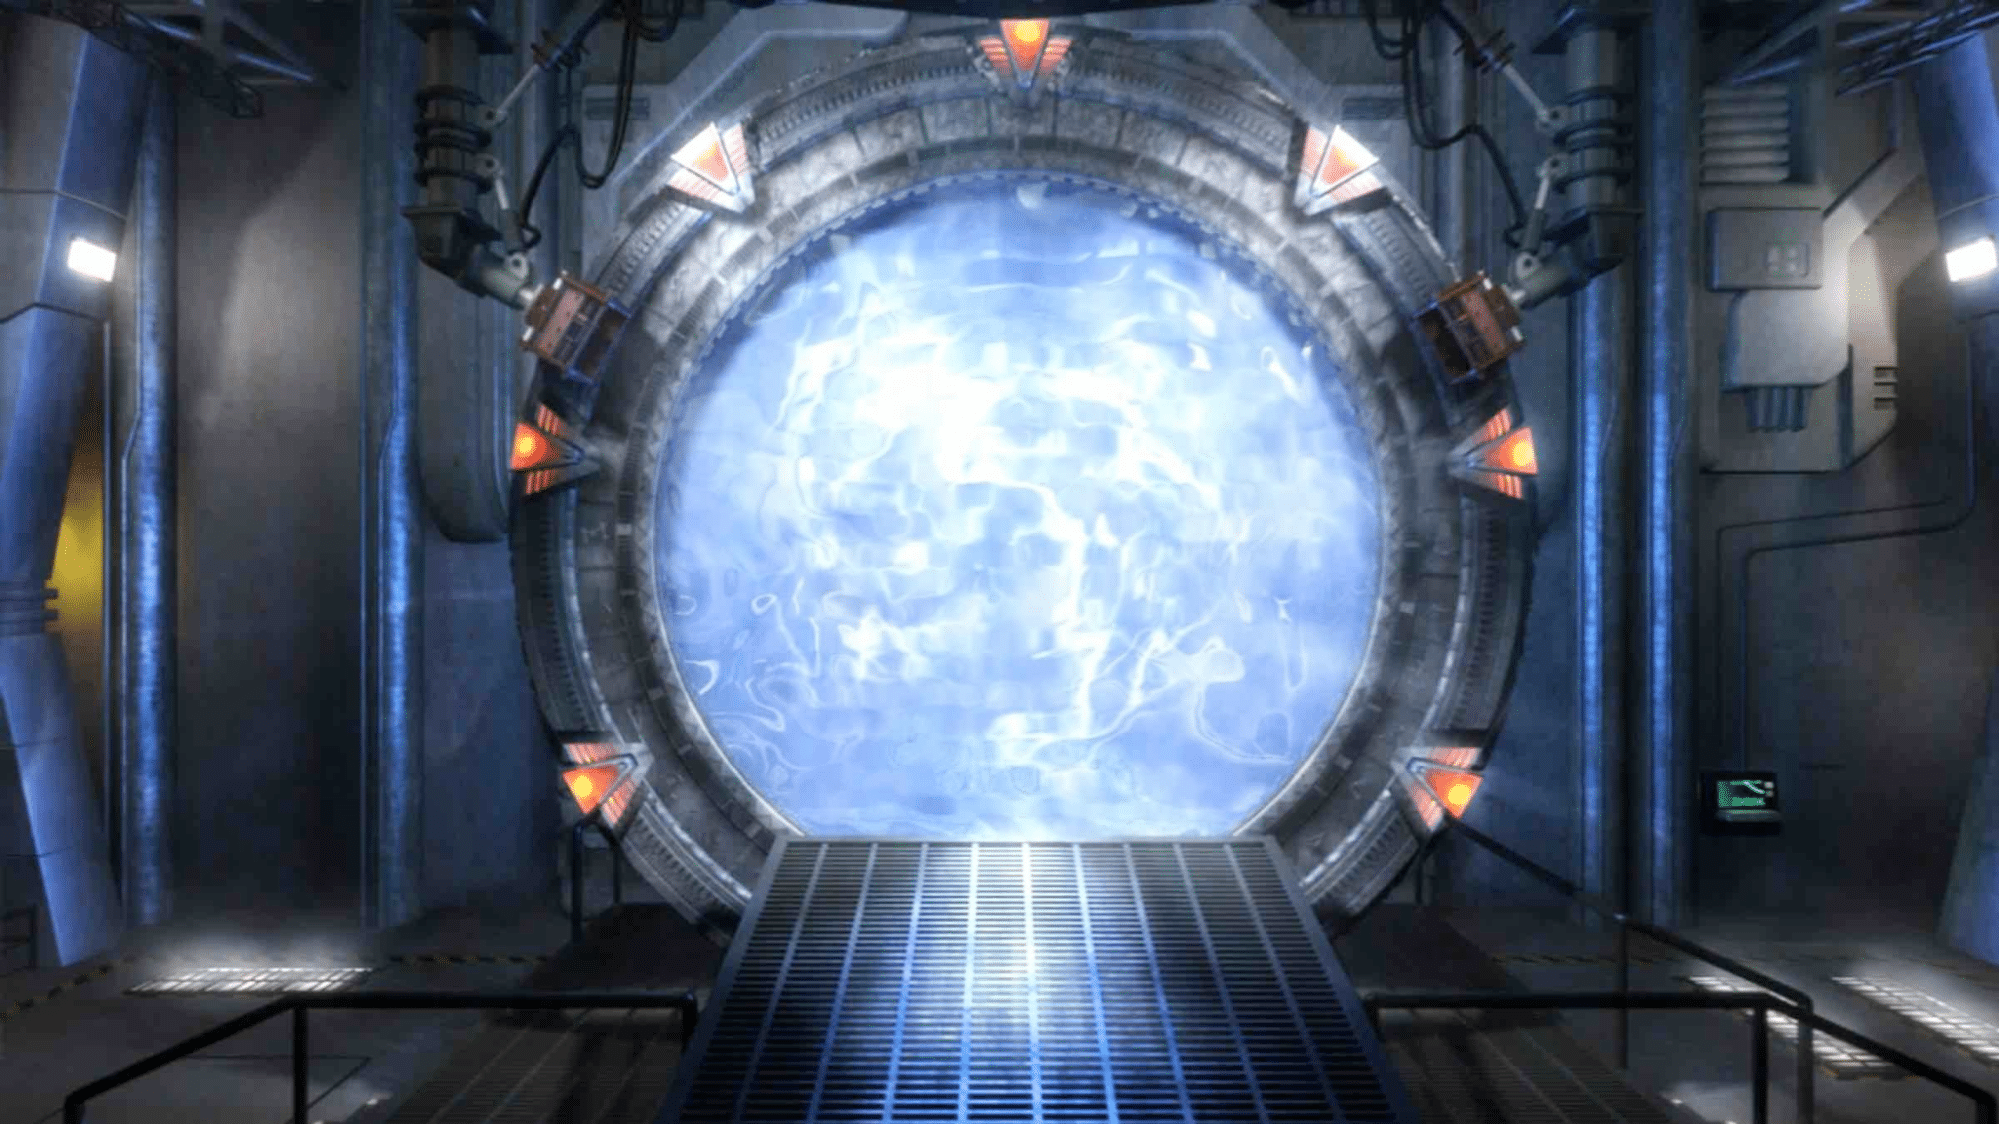 Stargate project visualization